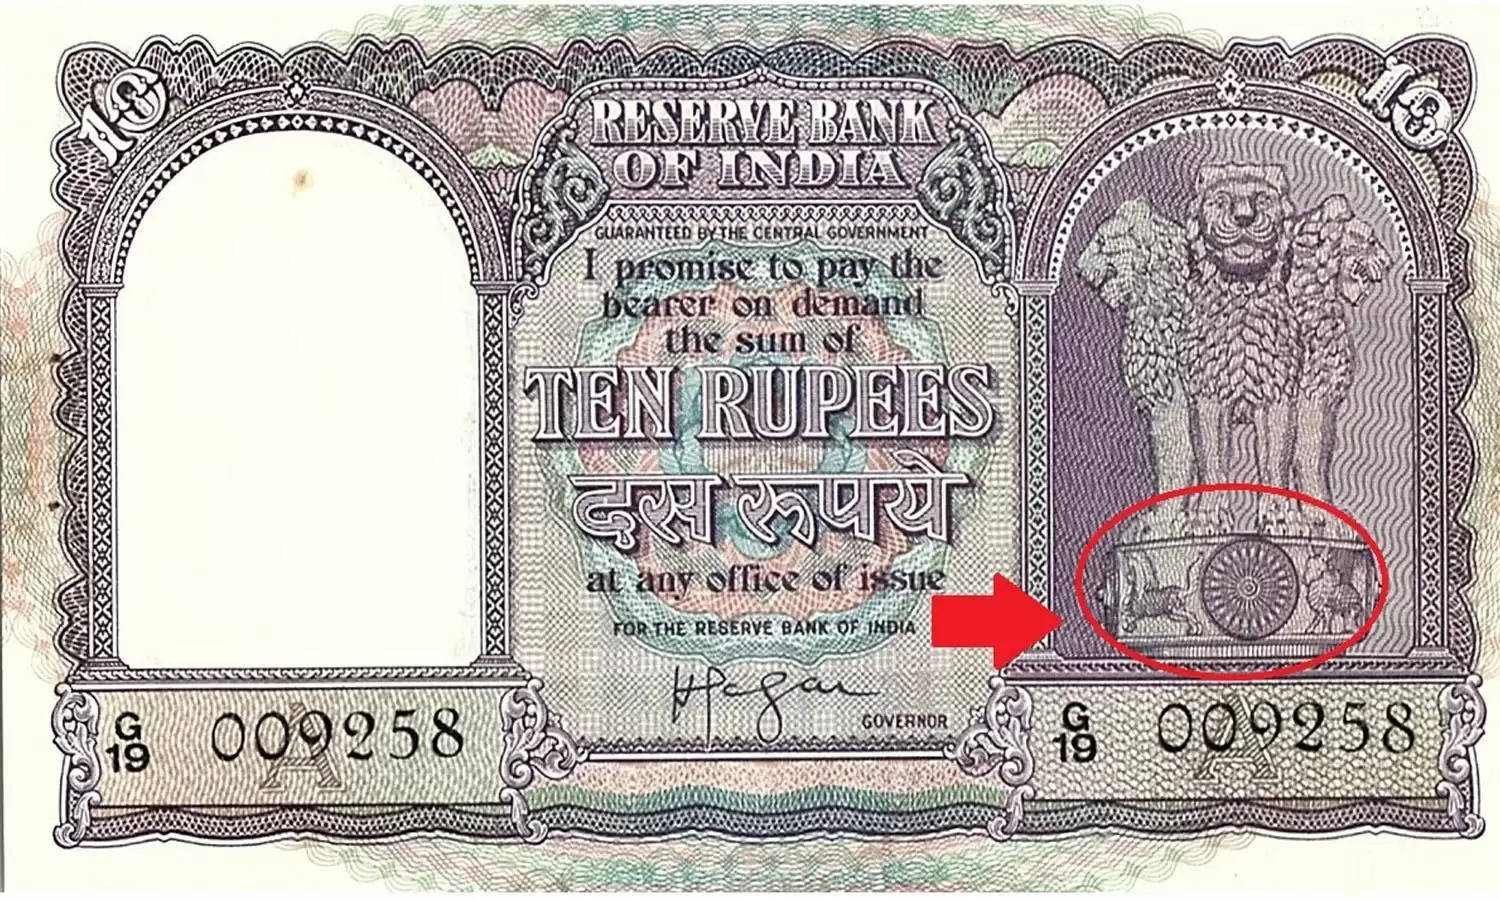 10 Rupees Old Note : ये 10 रुपये के नोट से आप पा सकते हैं लाखों रुपये, जानें कैसे?